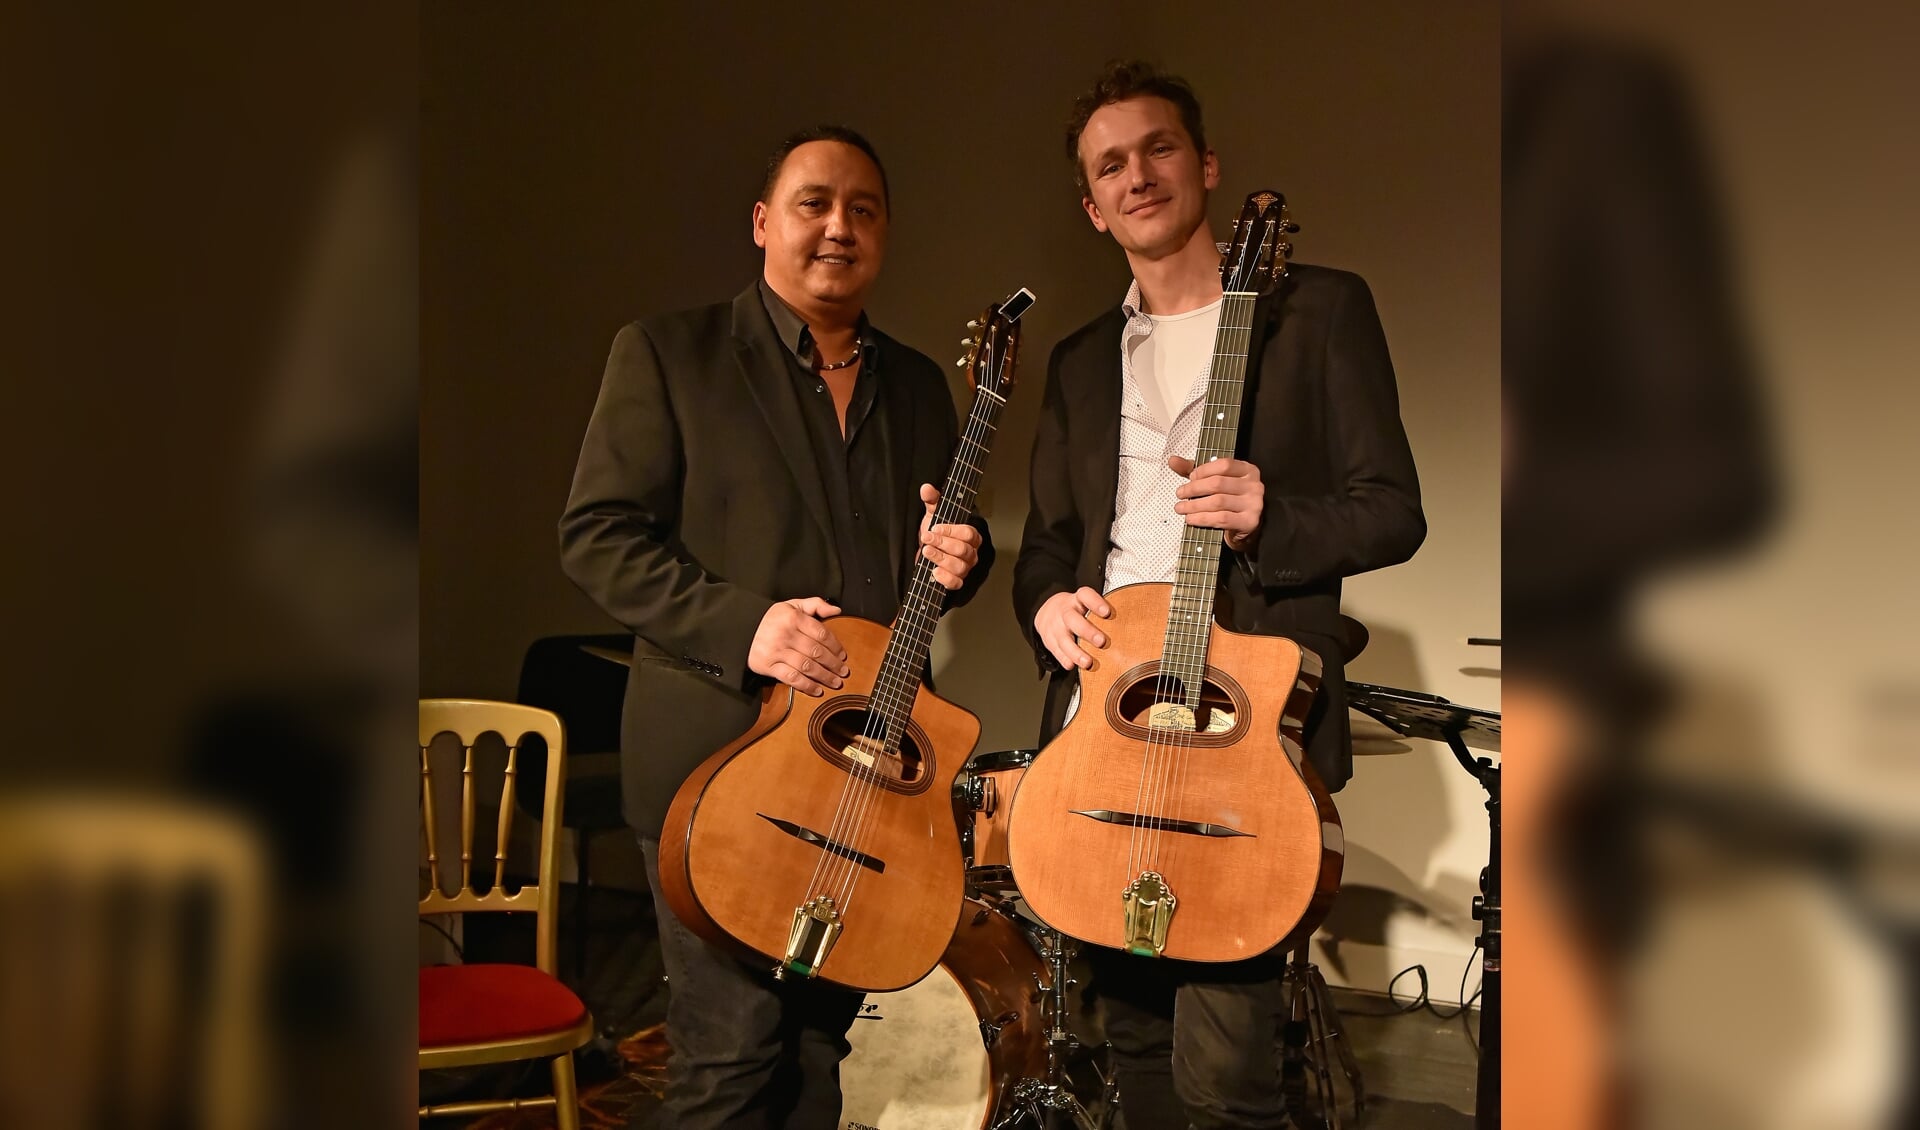 Paulus Schäfer (links) en Joost Zoeteman gaan een heerlijke gitaar battle aan tijdens Jasper Somsen Invites ...